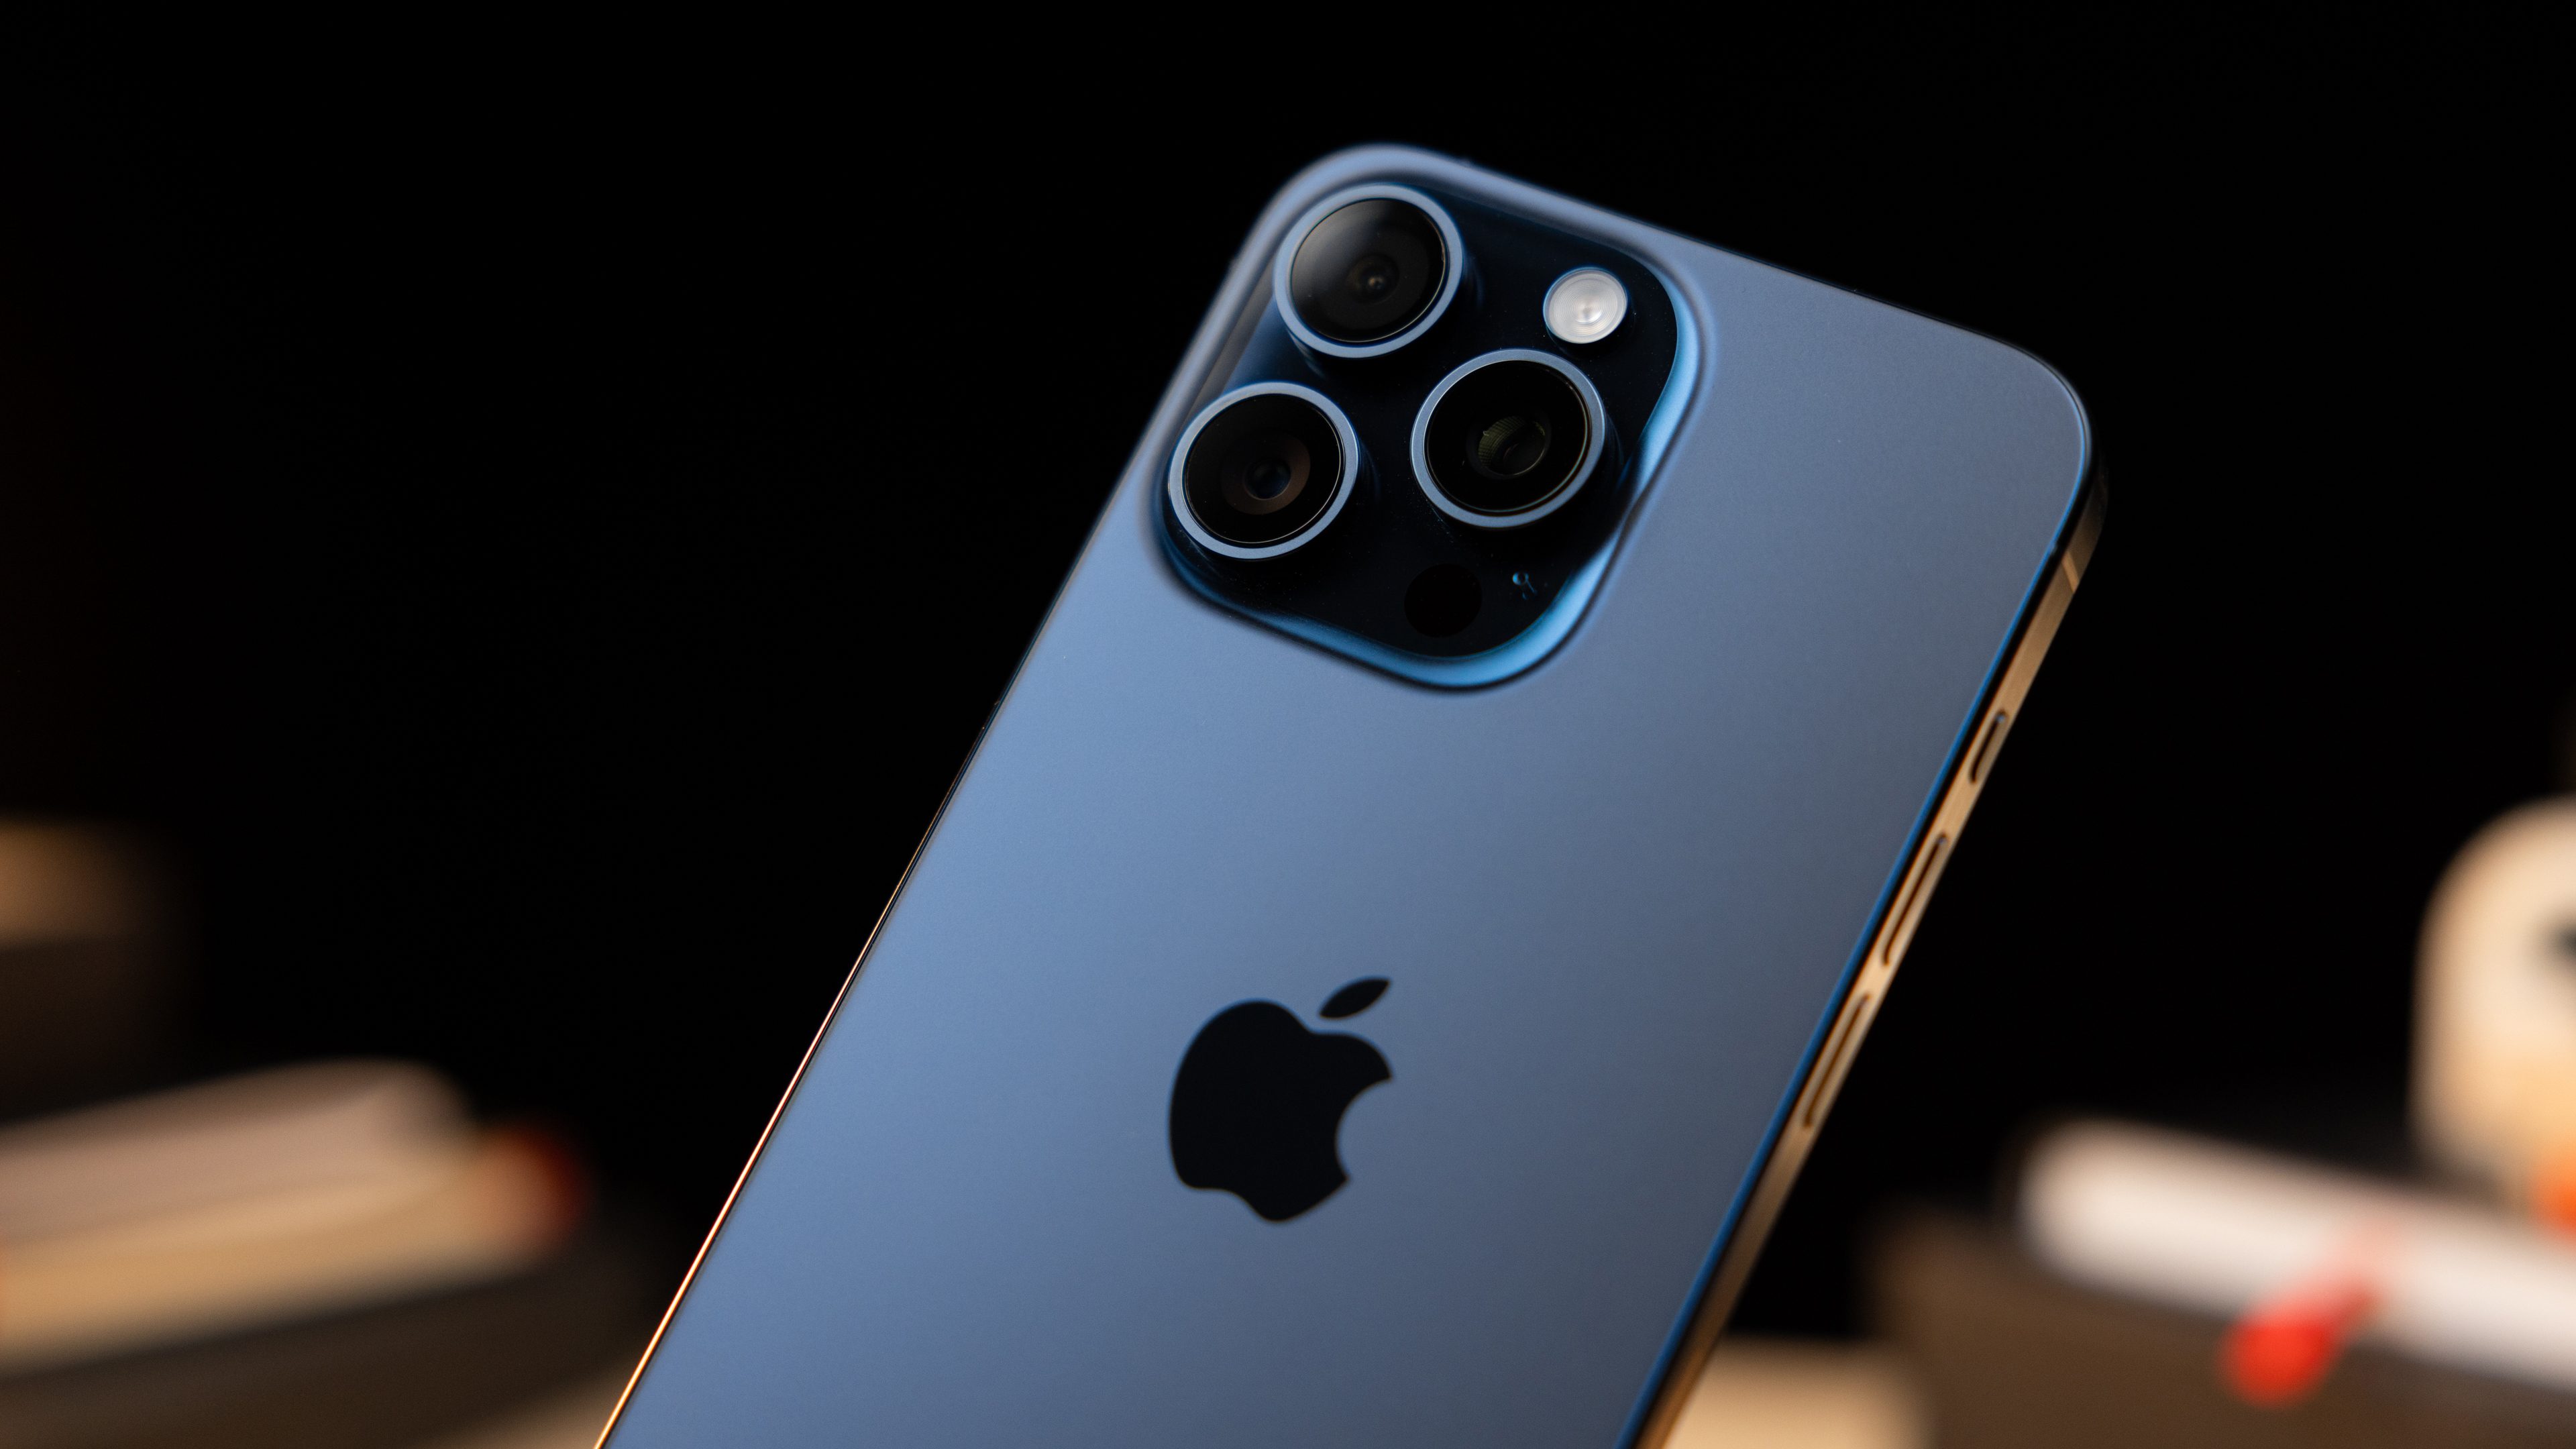 iPhone 12 Pro: Herstellung so teuer wie ein Mittelklasse-Handy